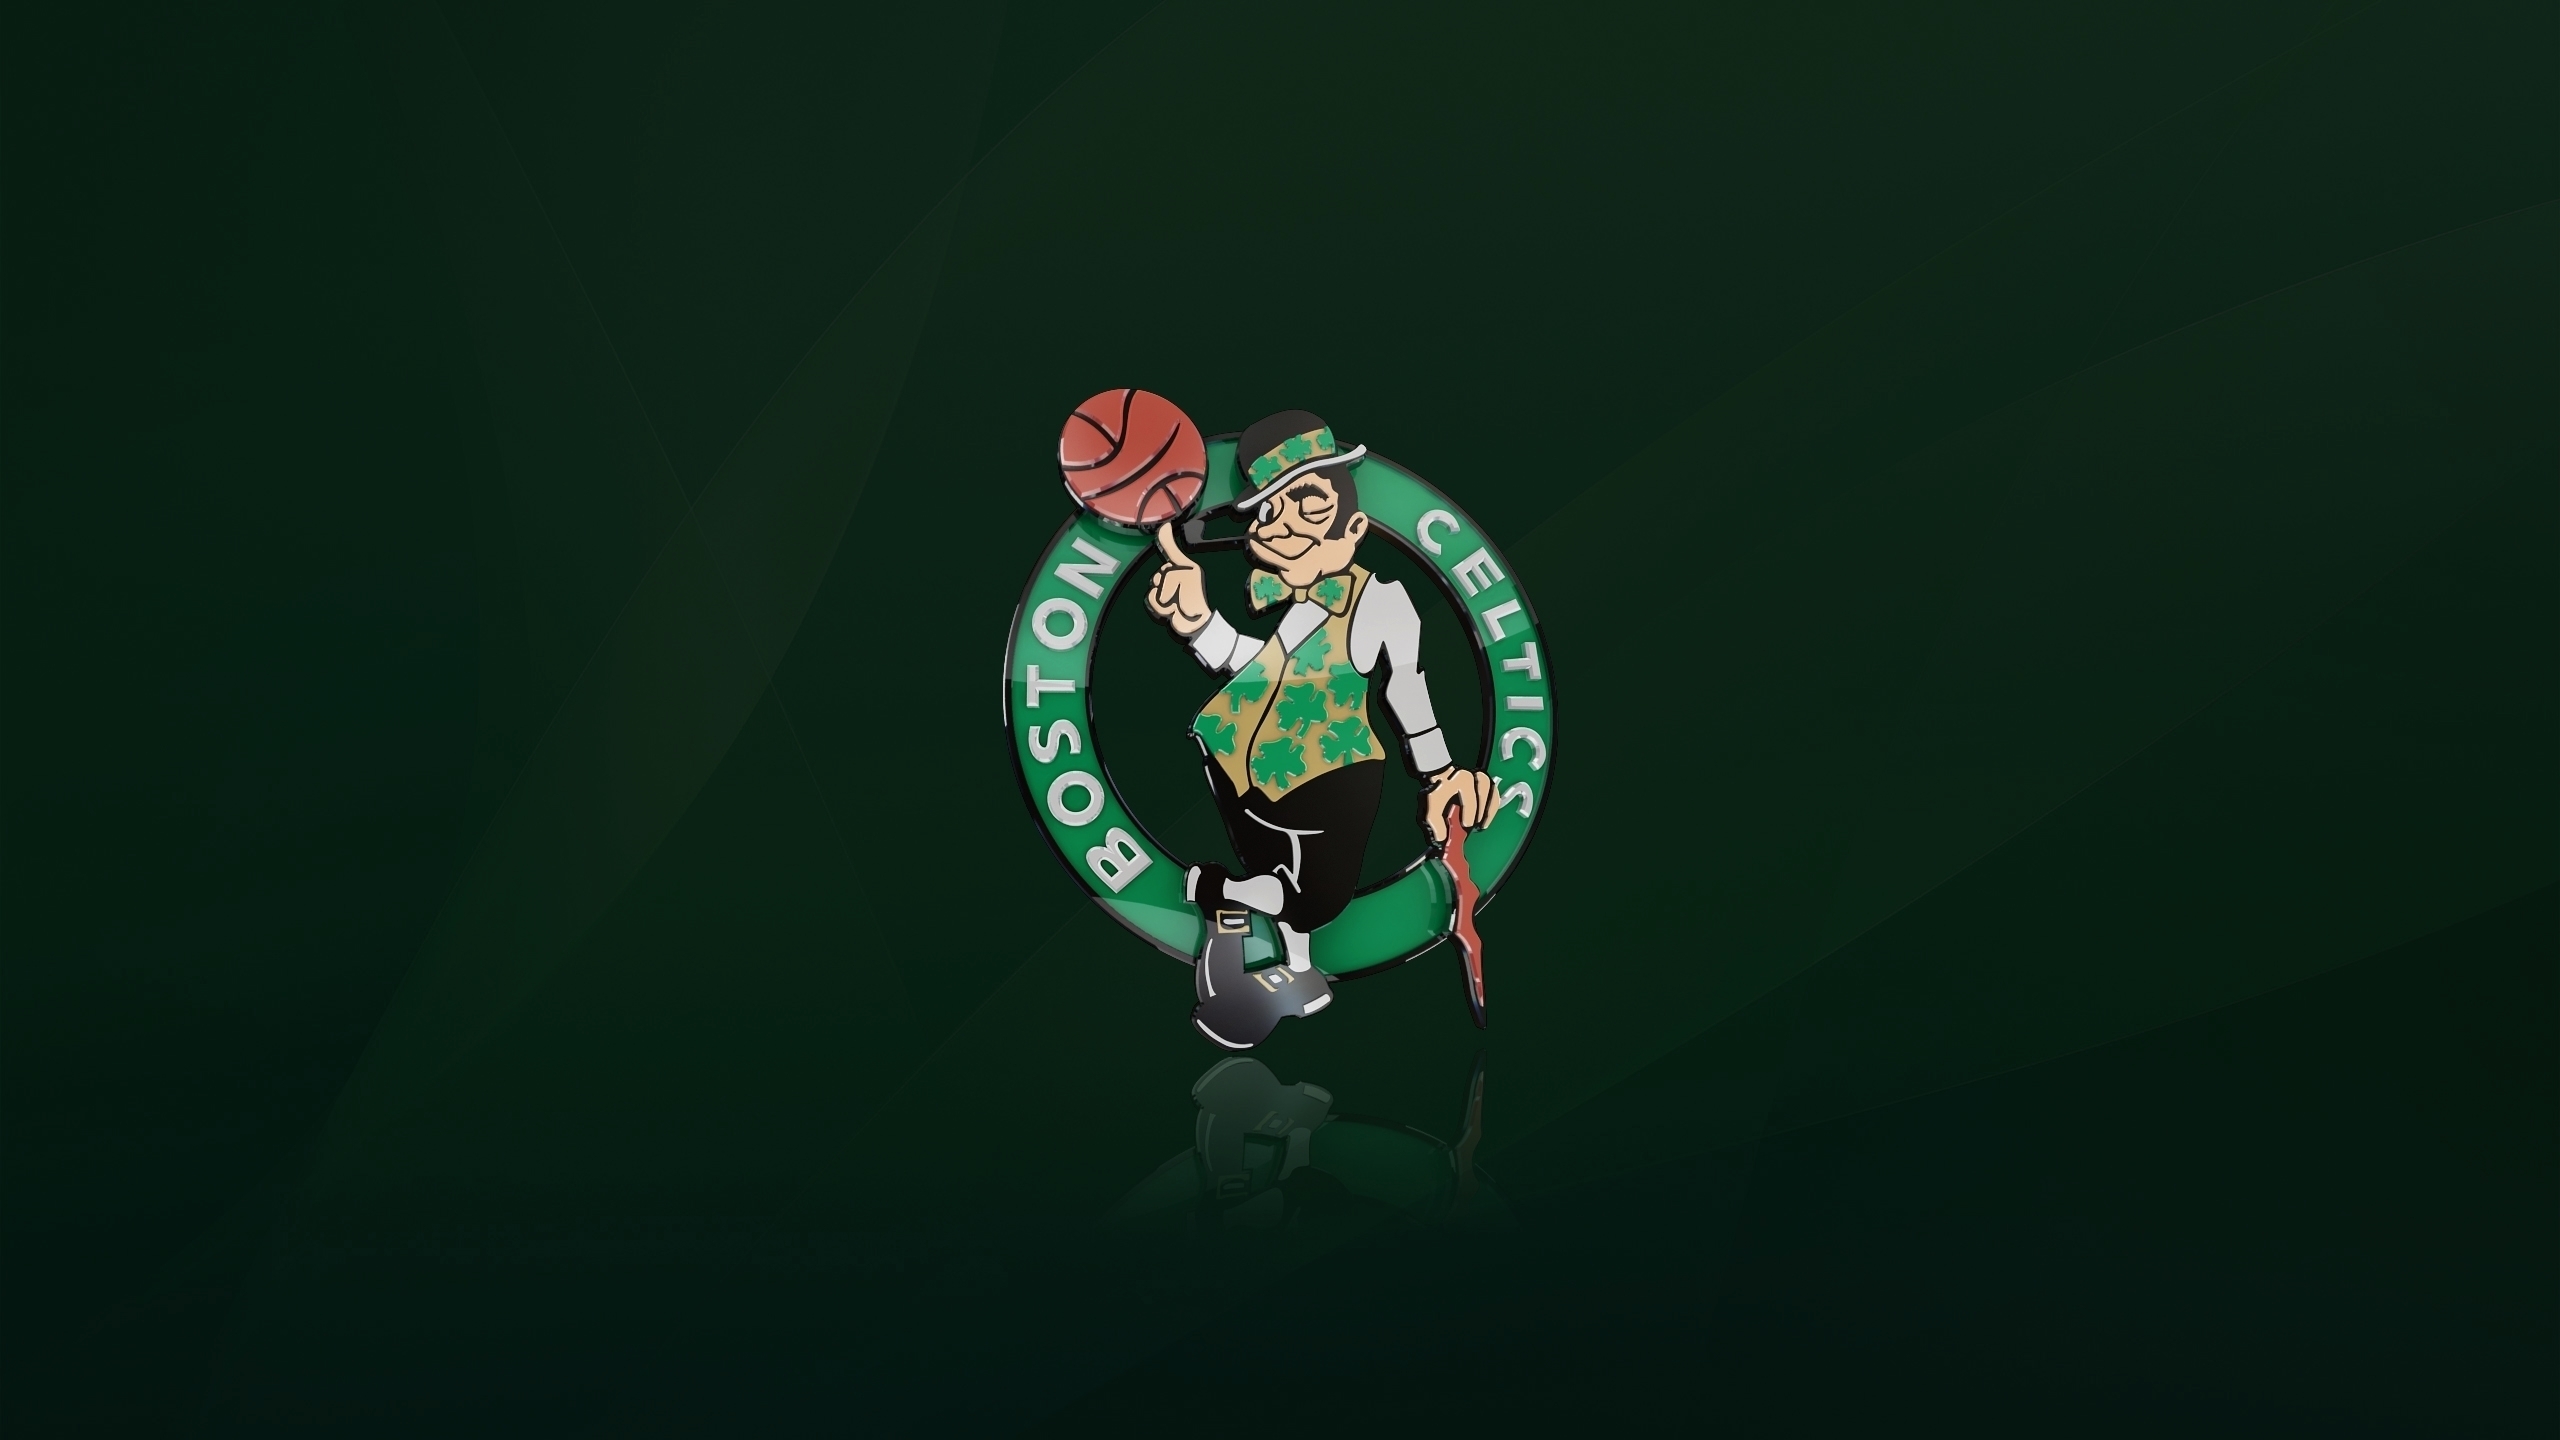 Boston Celtics Logo for 2560x1440 HDTV resolution